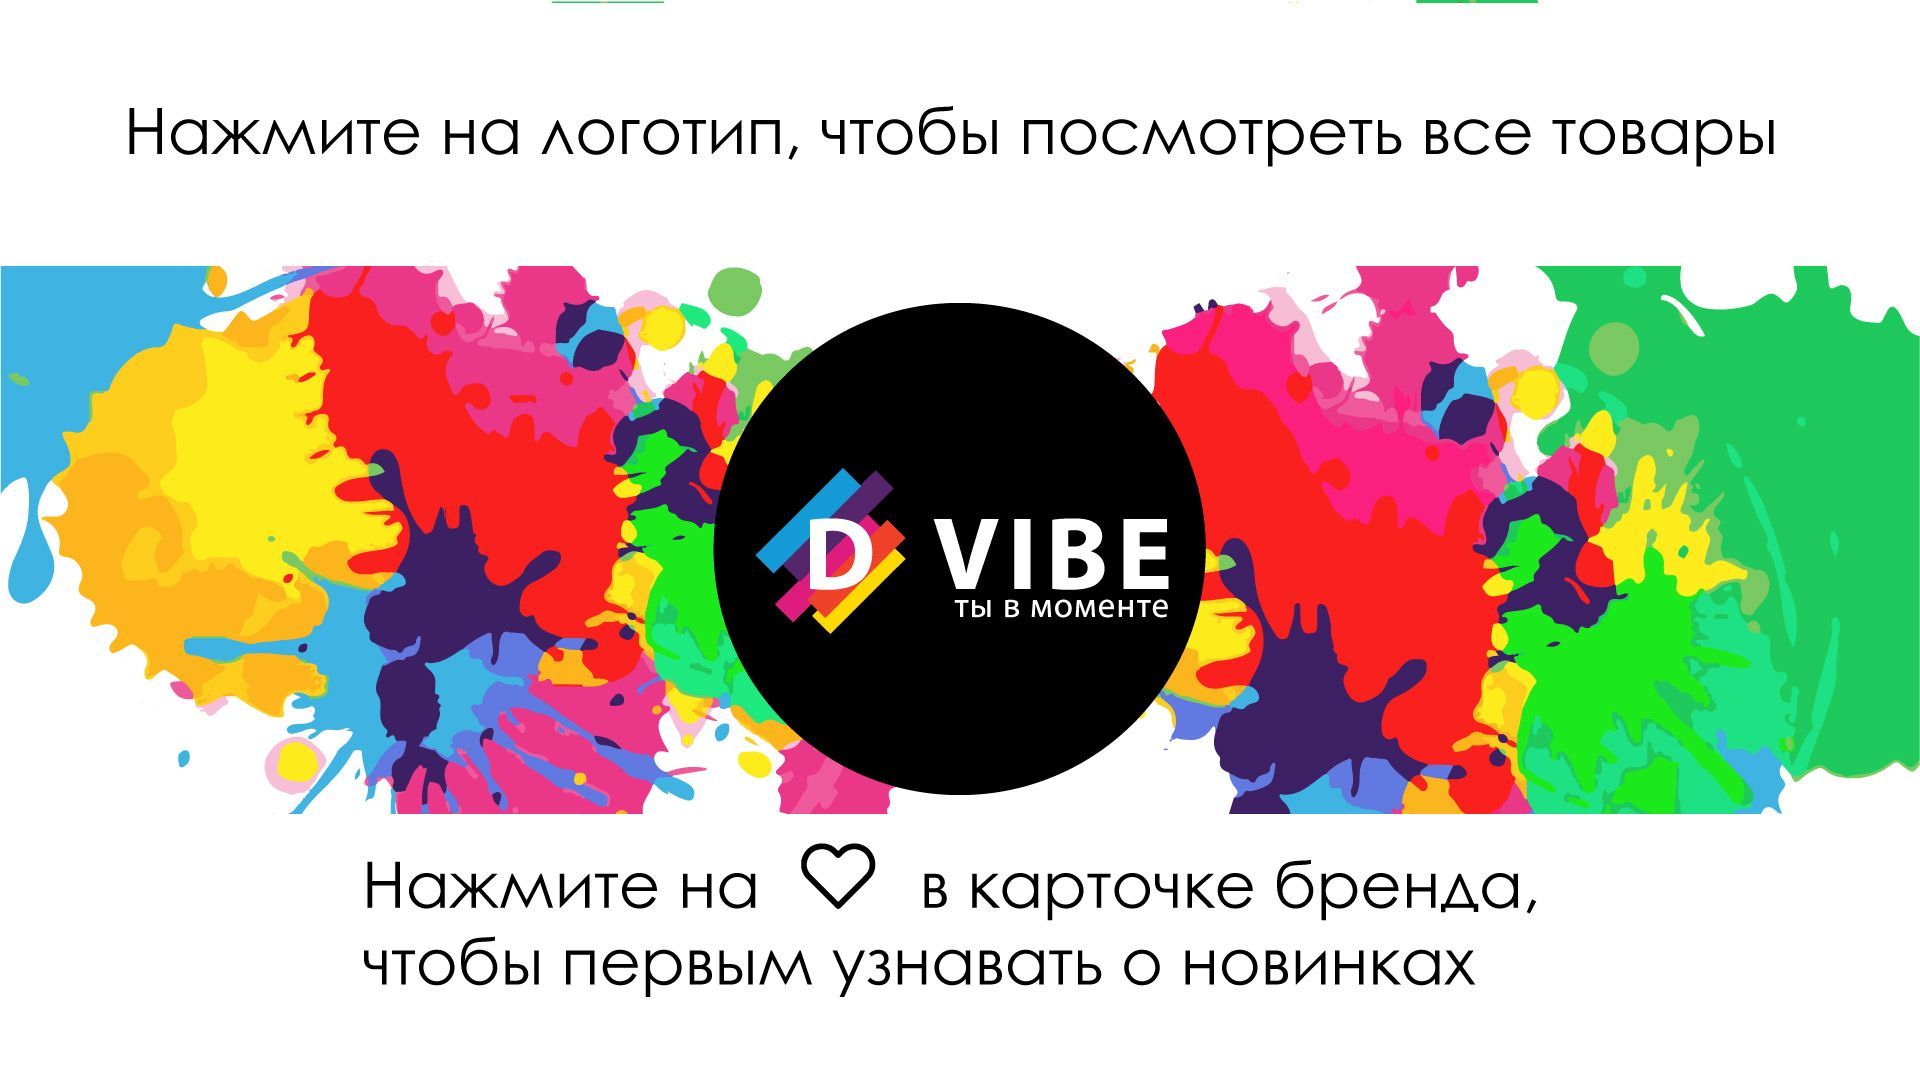 Полотенце подарочное D-vibe с вышивкой имени Олег и узором, 50/90 см, 100% хлопок